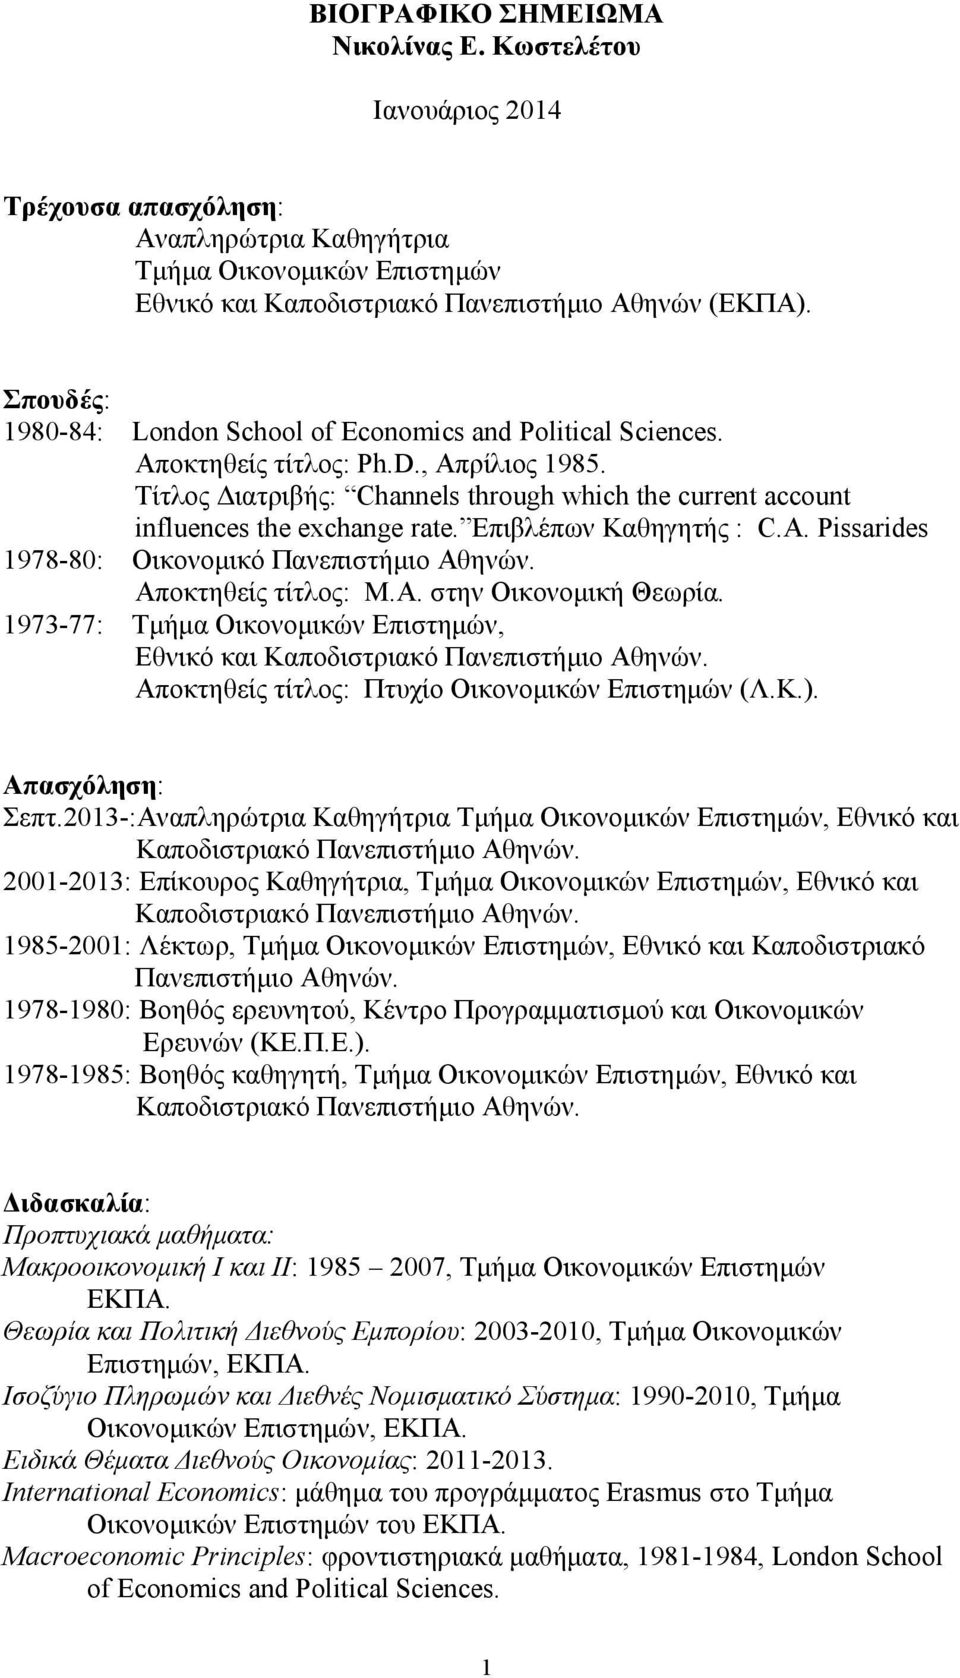 Επιβλέπων Καθηγητής : C.A. Pissarides 1978-80: Οικονομικό Πανεπιστήμιο Αθηνών. Αποκτηθείς τίτλος: Μ.Α. στην Οικονομική Θεωρία.